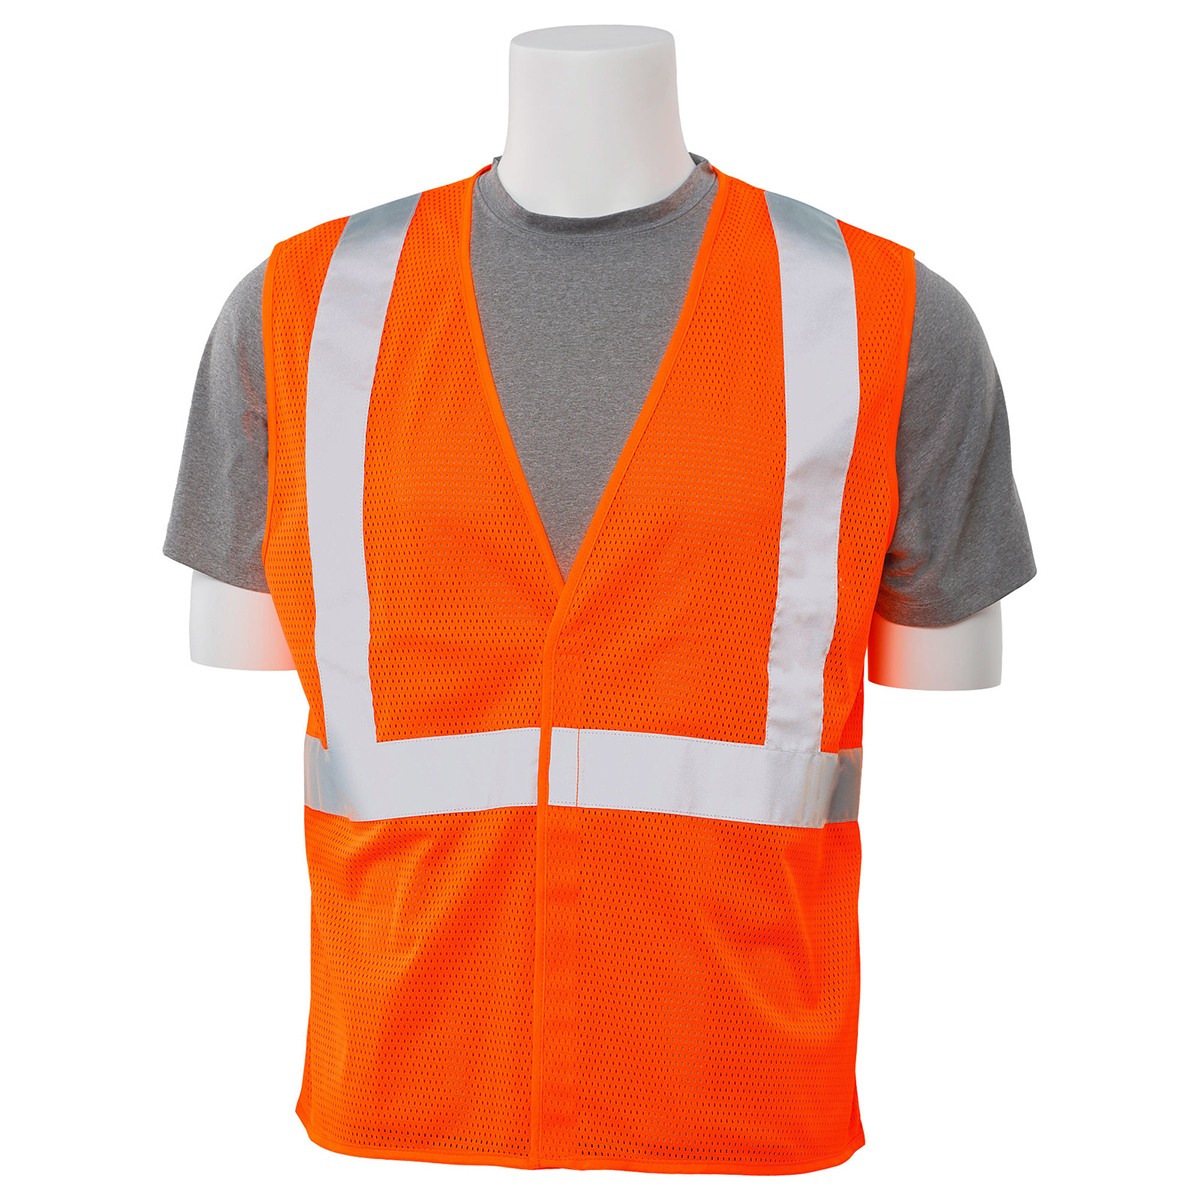 Mesh Safety Vest Hi Viz Orange 2X